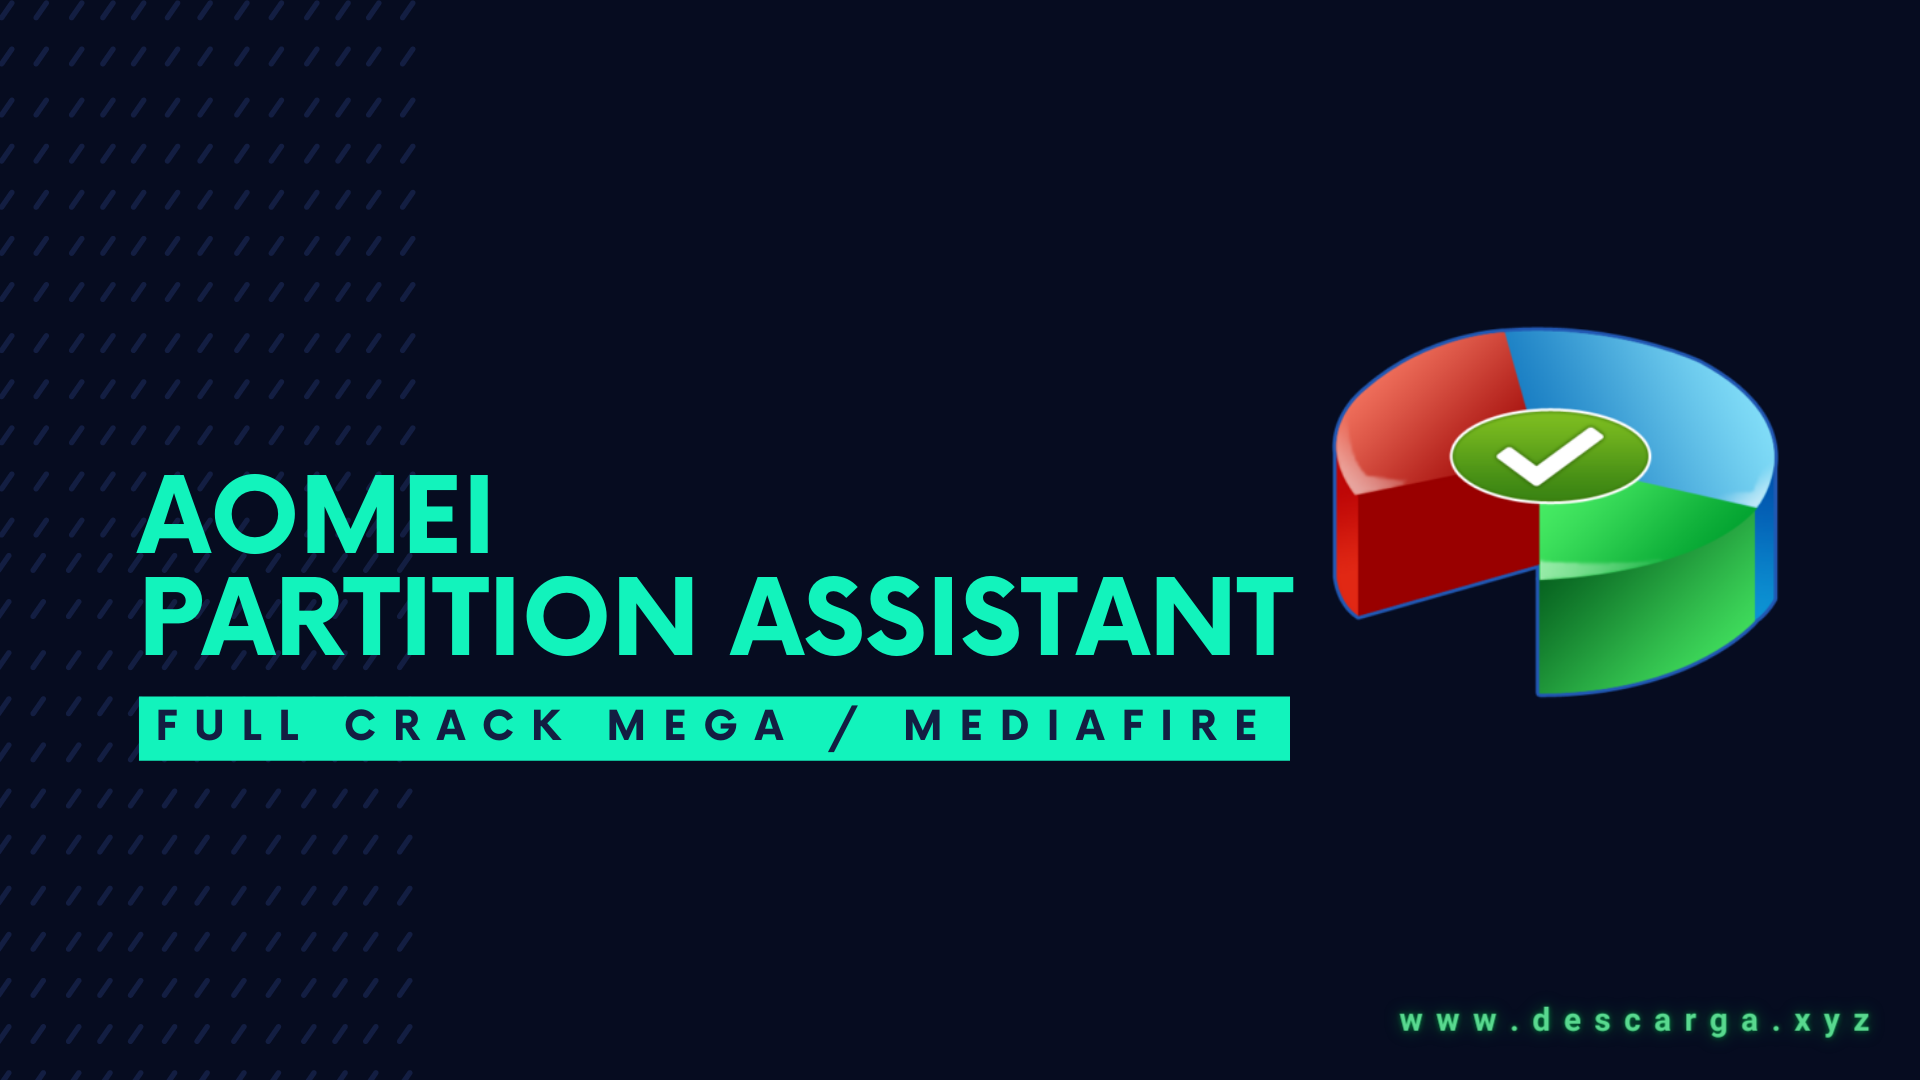 Download 🥇 AOMEI Partition Assistant FULL! CRACK! v10.3.1 ✅ MEGA